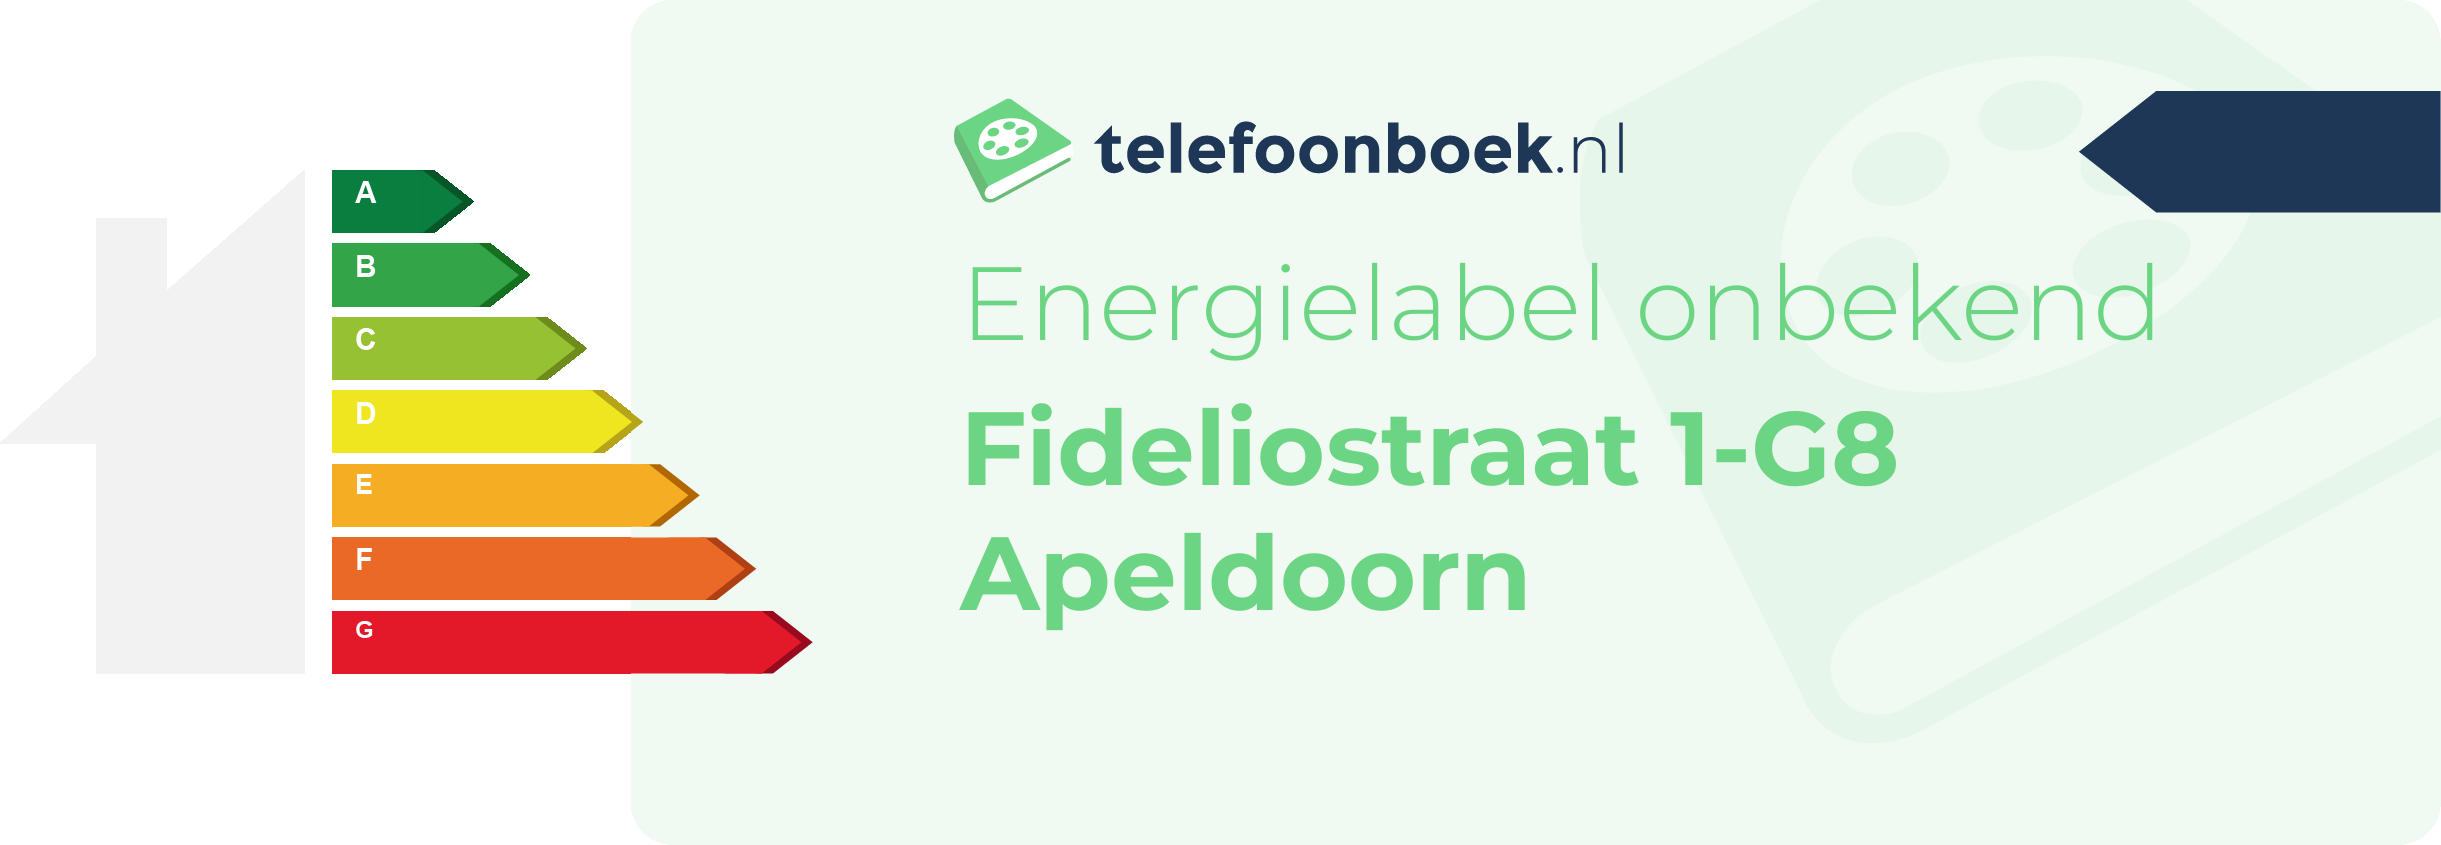 Energielabel Fideliostraat 1-G8 Apeldoorn